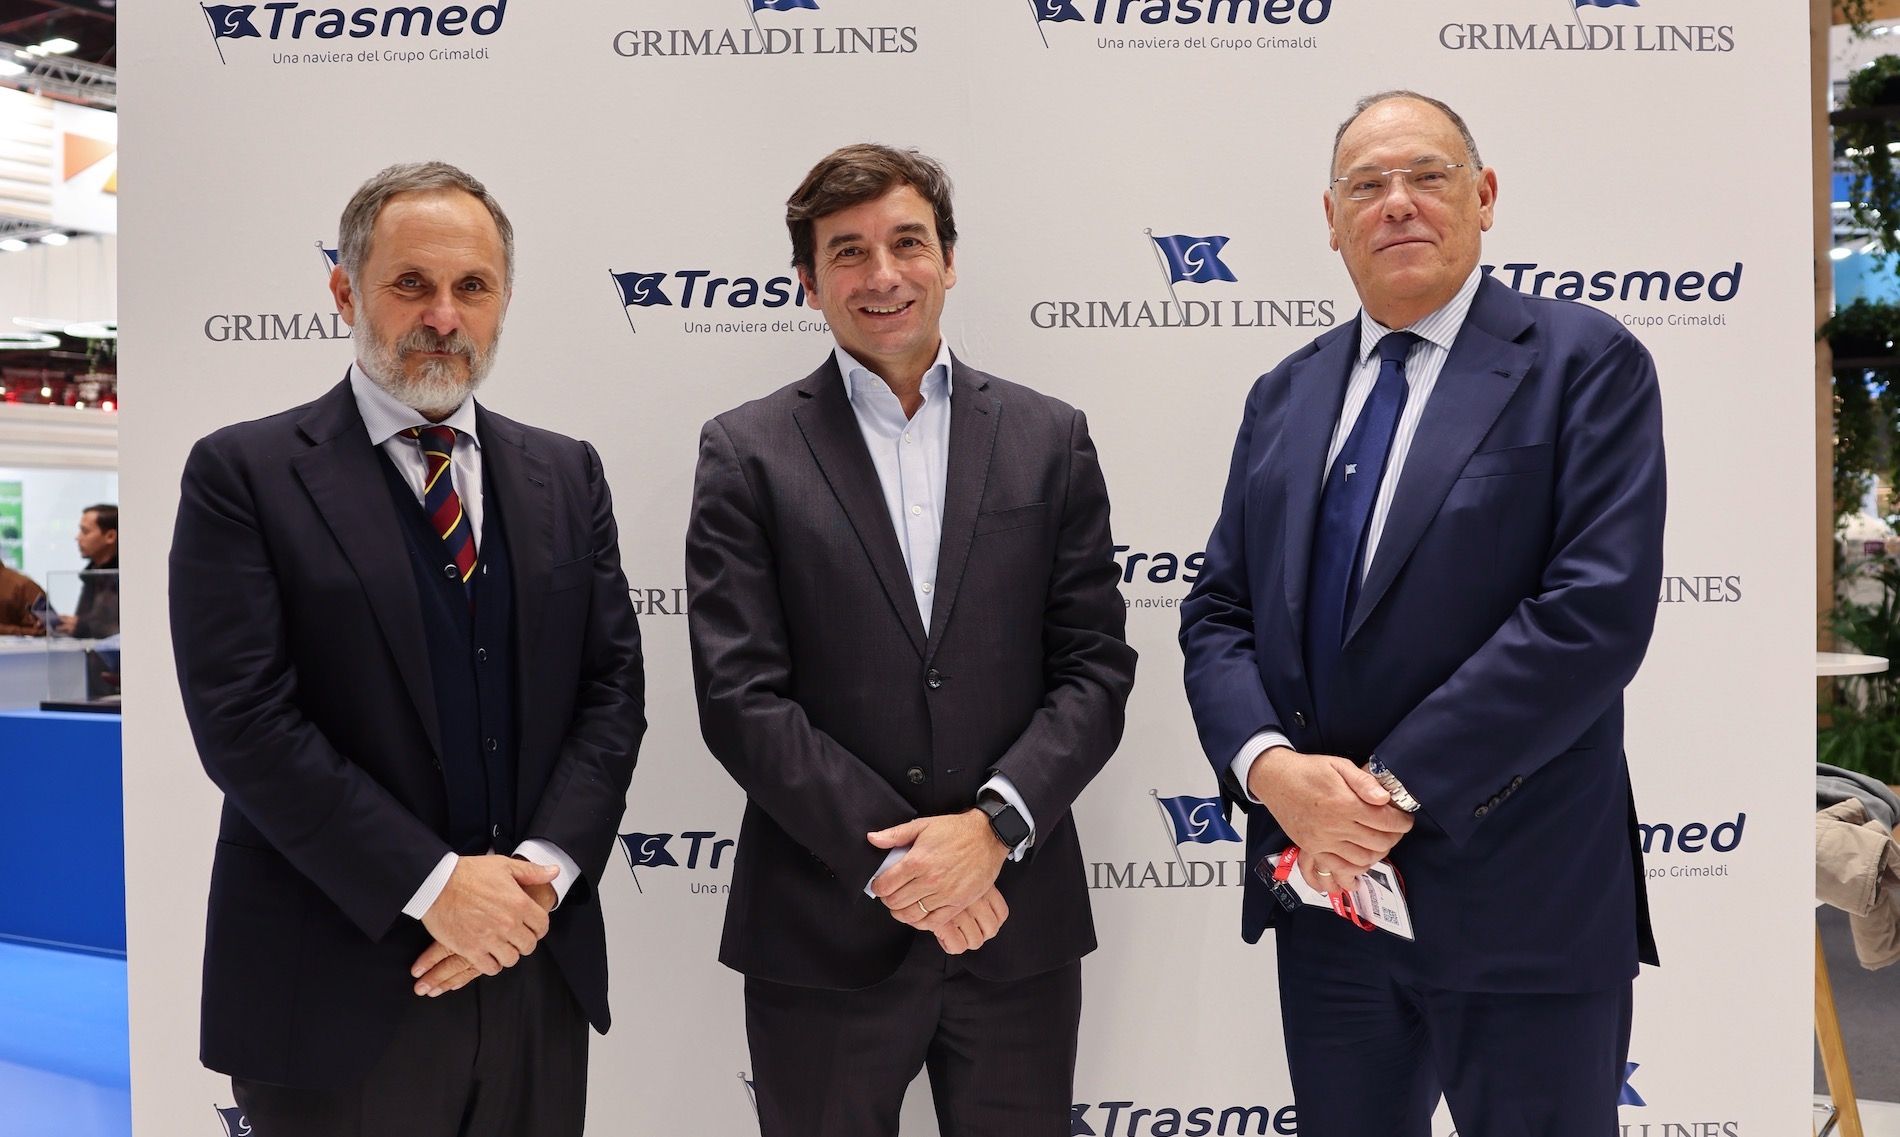 De izquierda a derecha, el CEO del Grupo Grimaldi en España, Mario Massarotti, el director de Relaciones Institucionales de Grupo Grimaldi en España, Miguel Pardo y Ettore Morace, CEO de Trasmed